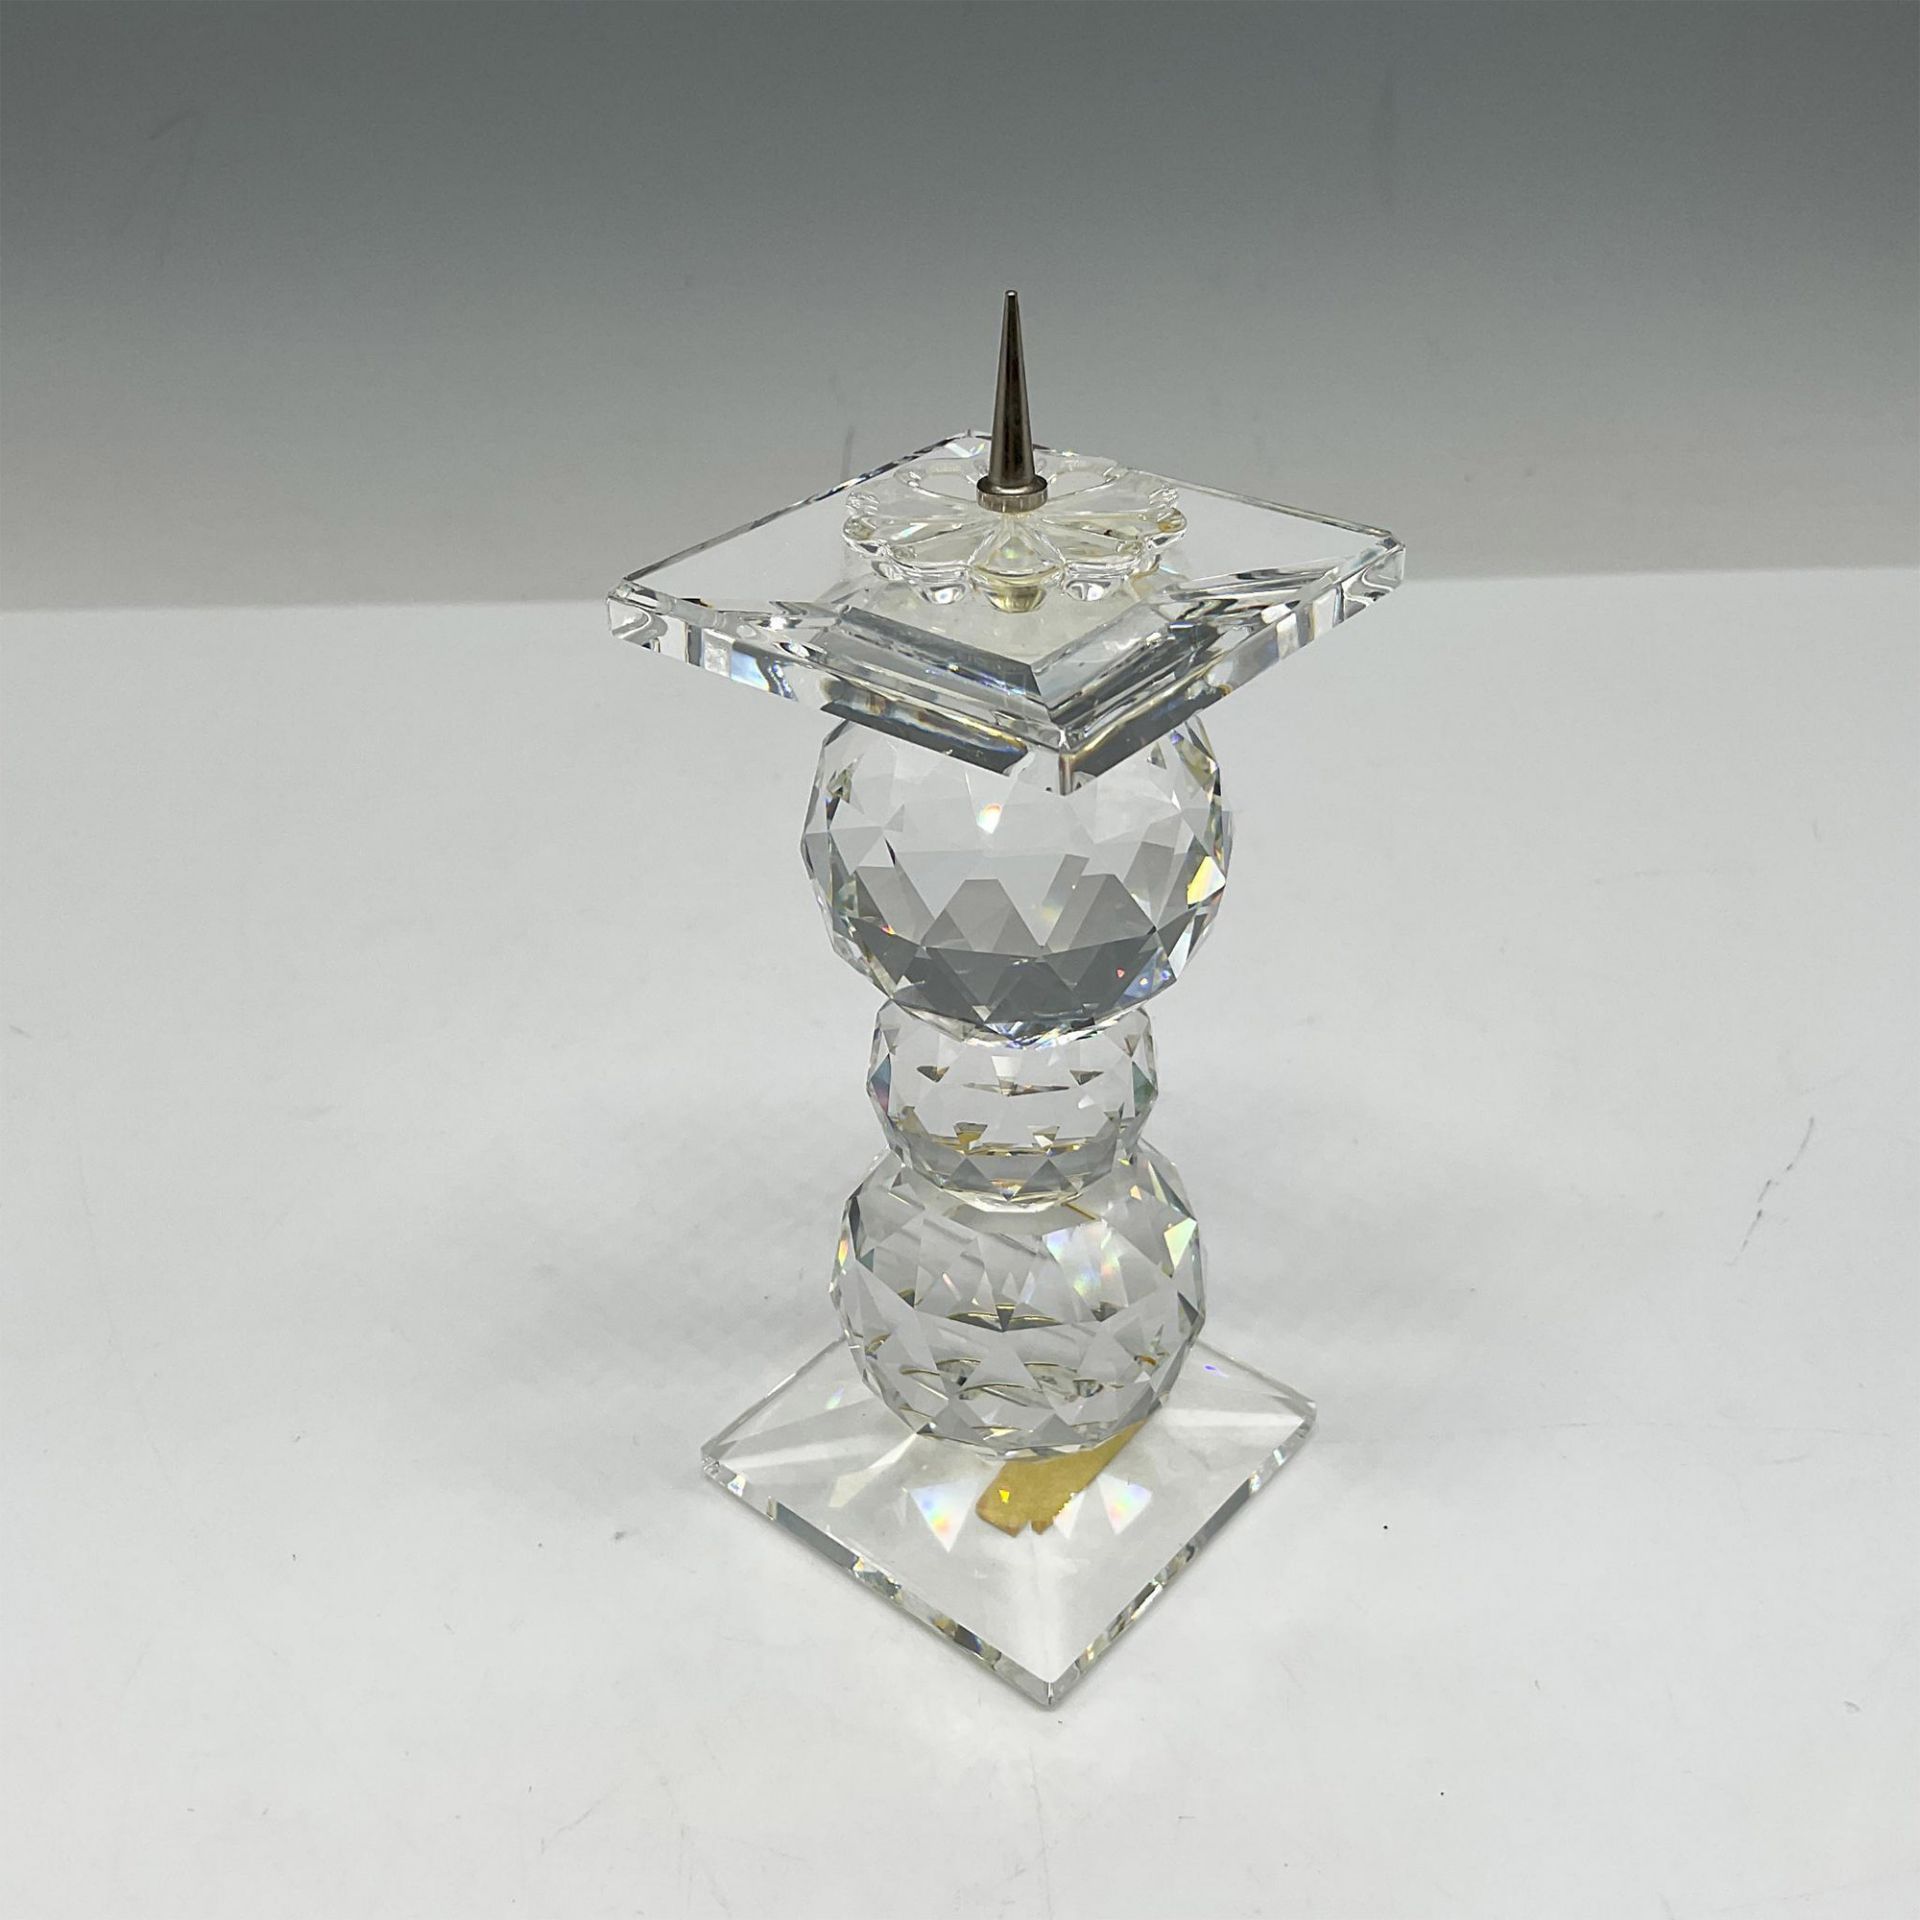 Swarovski Silver Crystal Candle Holder - Image 2 of 4